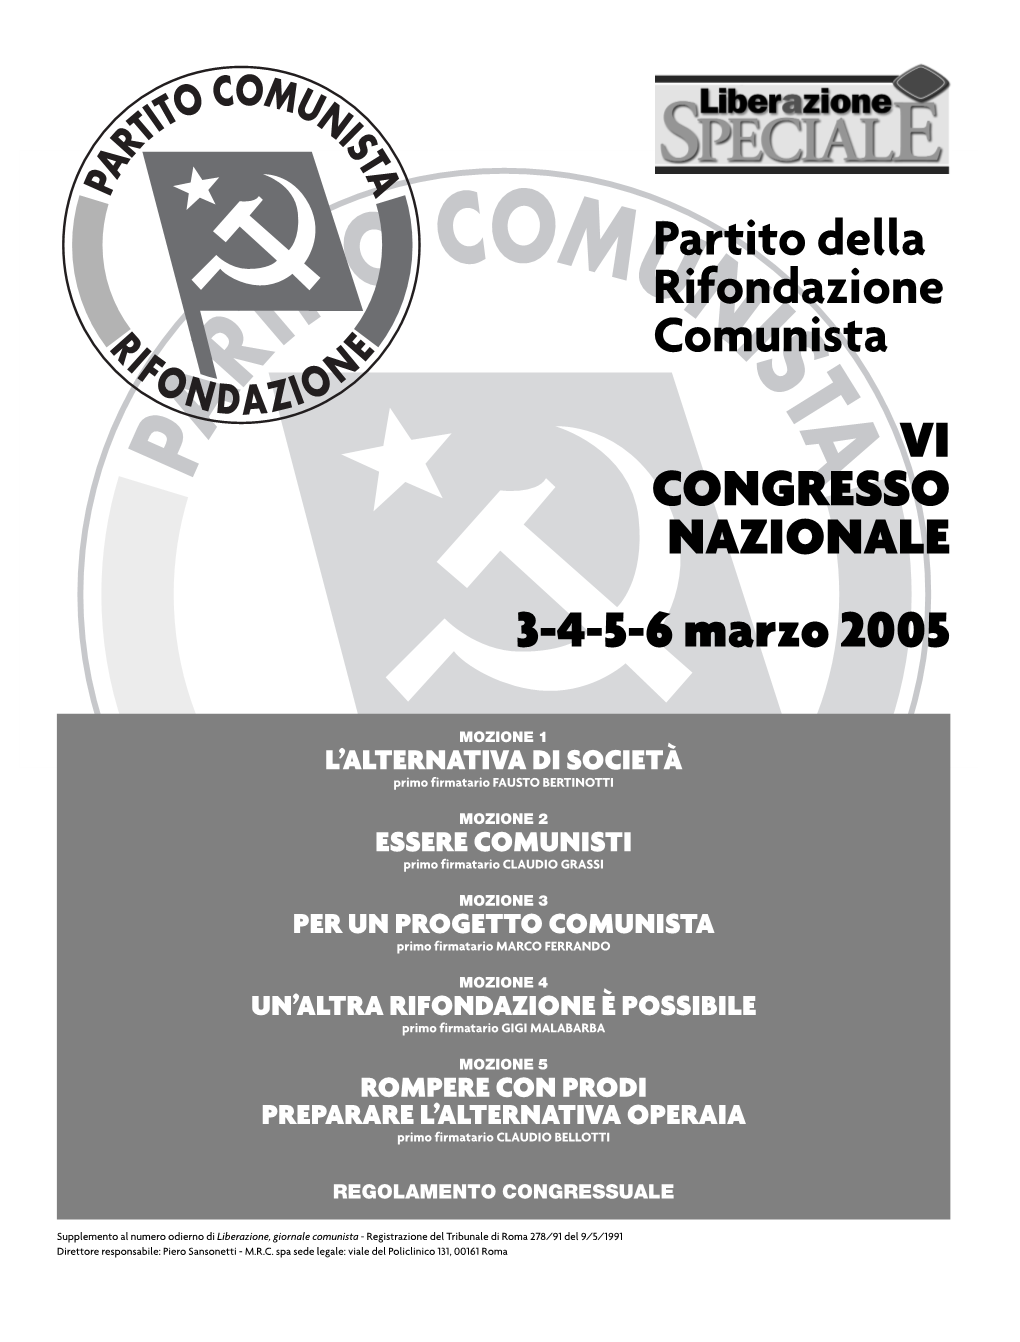 VI CONGRESSO NAZIONALE 3-4-5-6 Marzo 2005